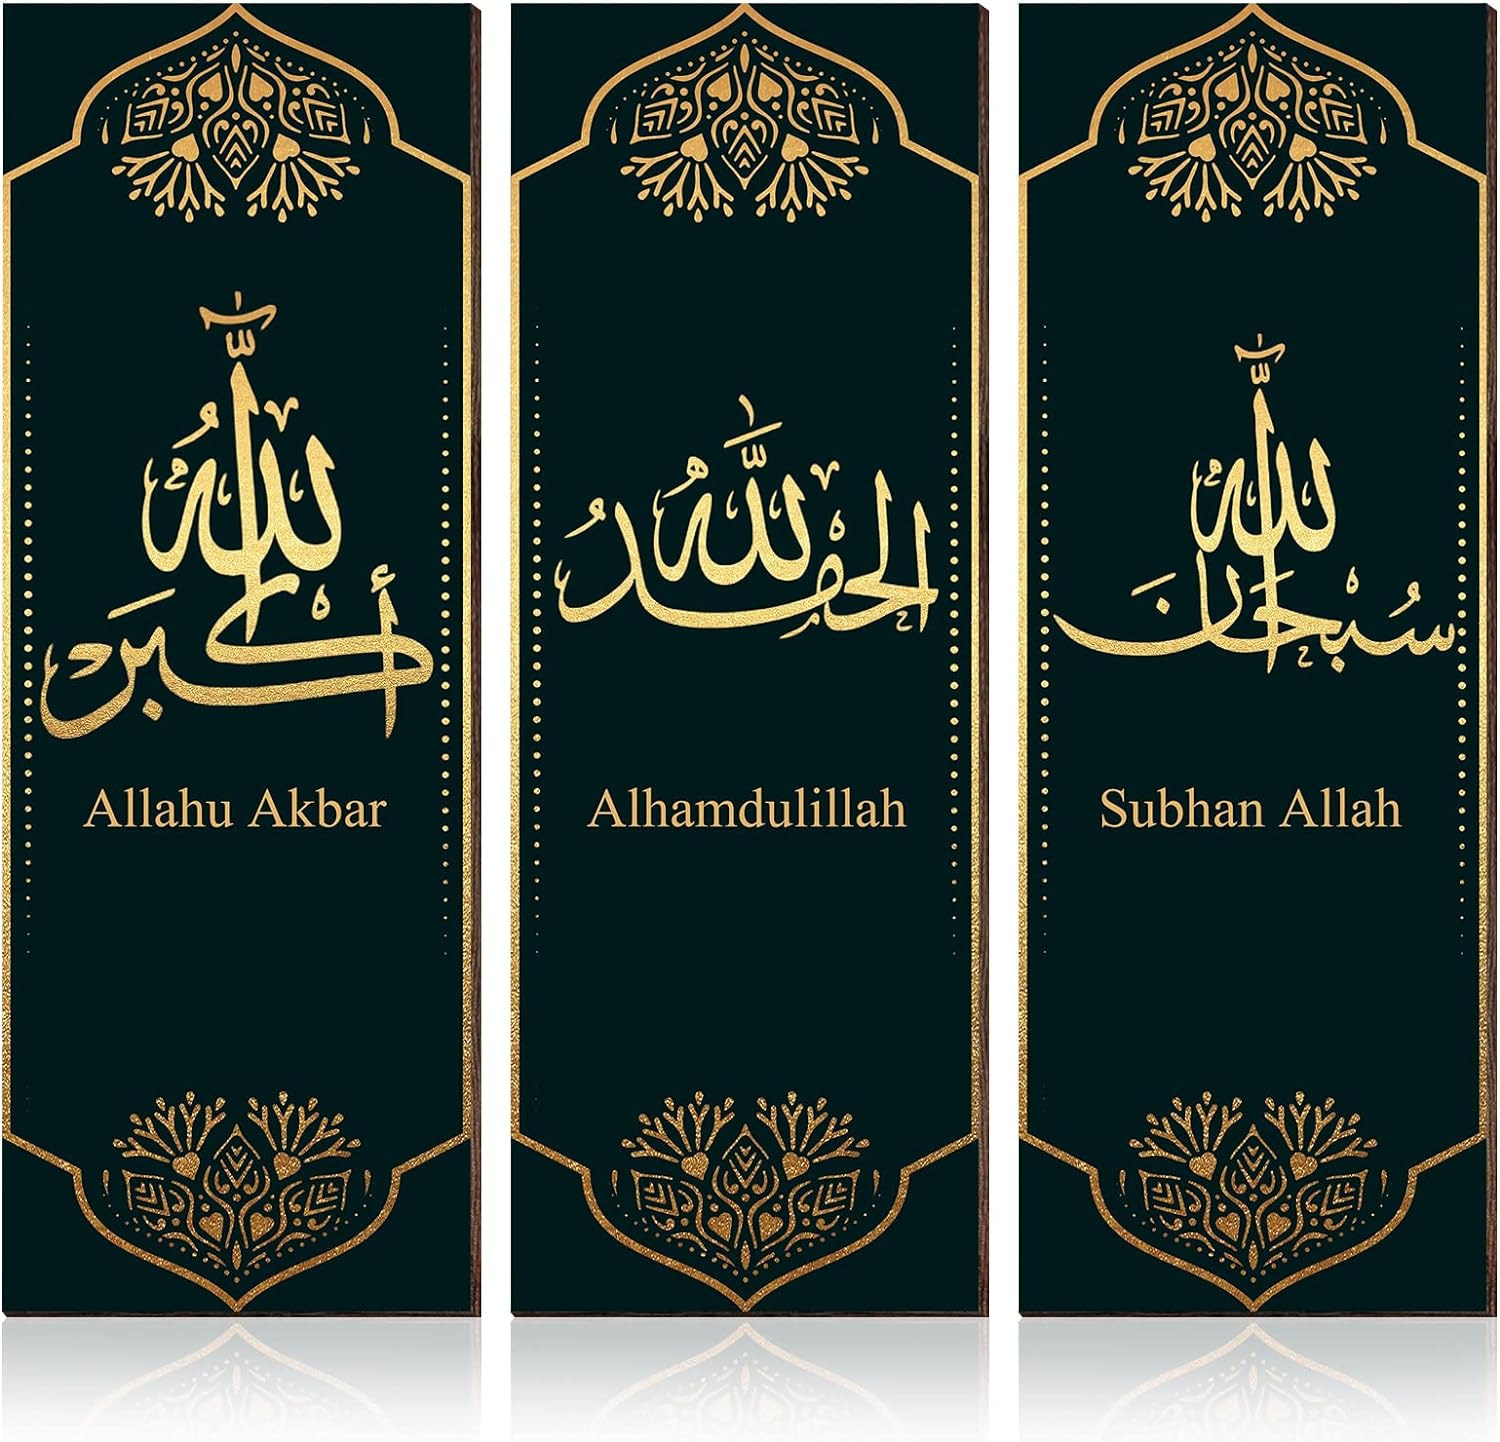 كينكلاي لوحة فنية اسلامية لديكور الحائط مكونة من 3 قطع خشبية بتصميم الله